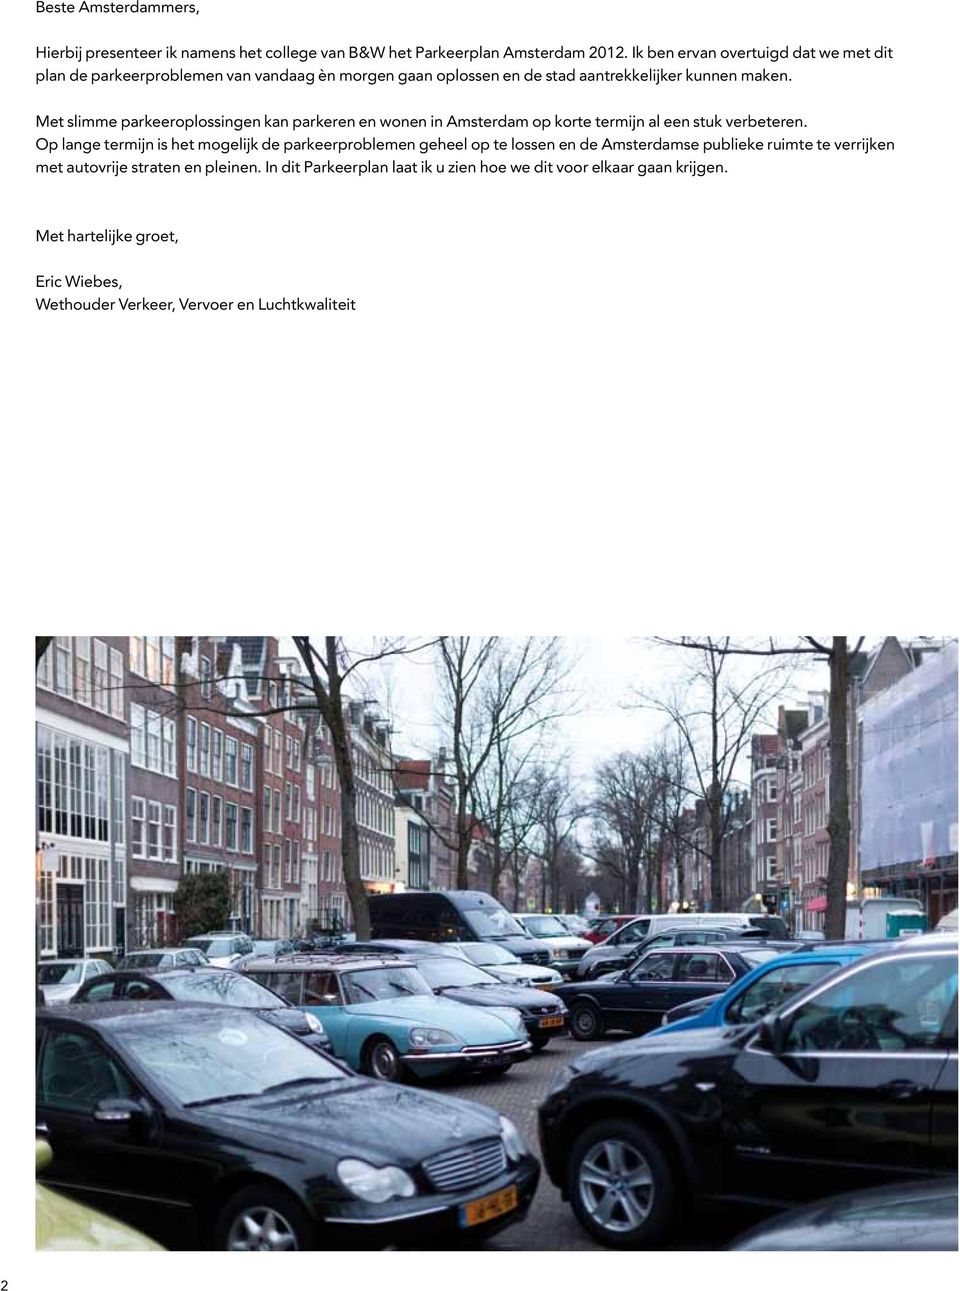 Met slimme parkeeroplossingen kan parkeren en wonen in Amsterdam op korte termijn al een stuk verbeteren.